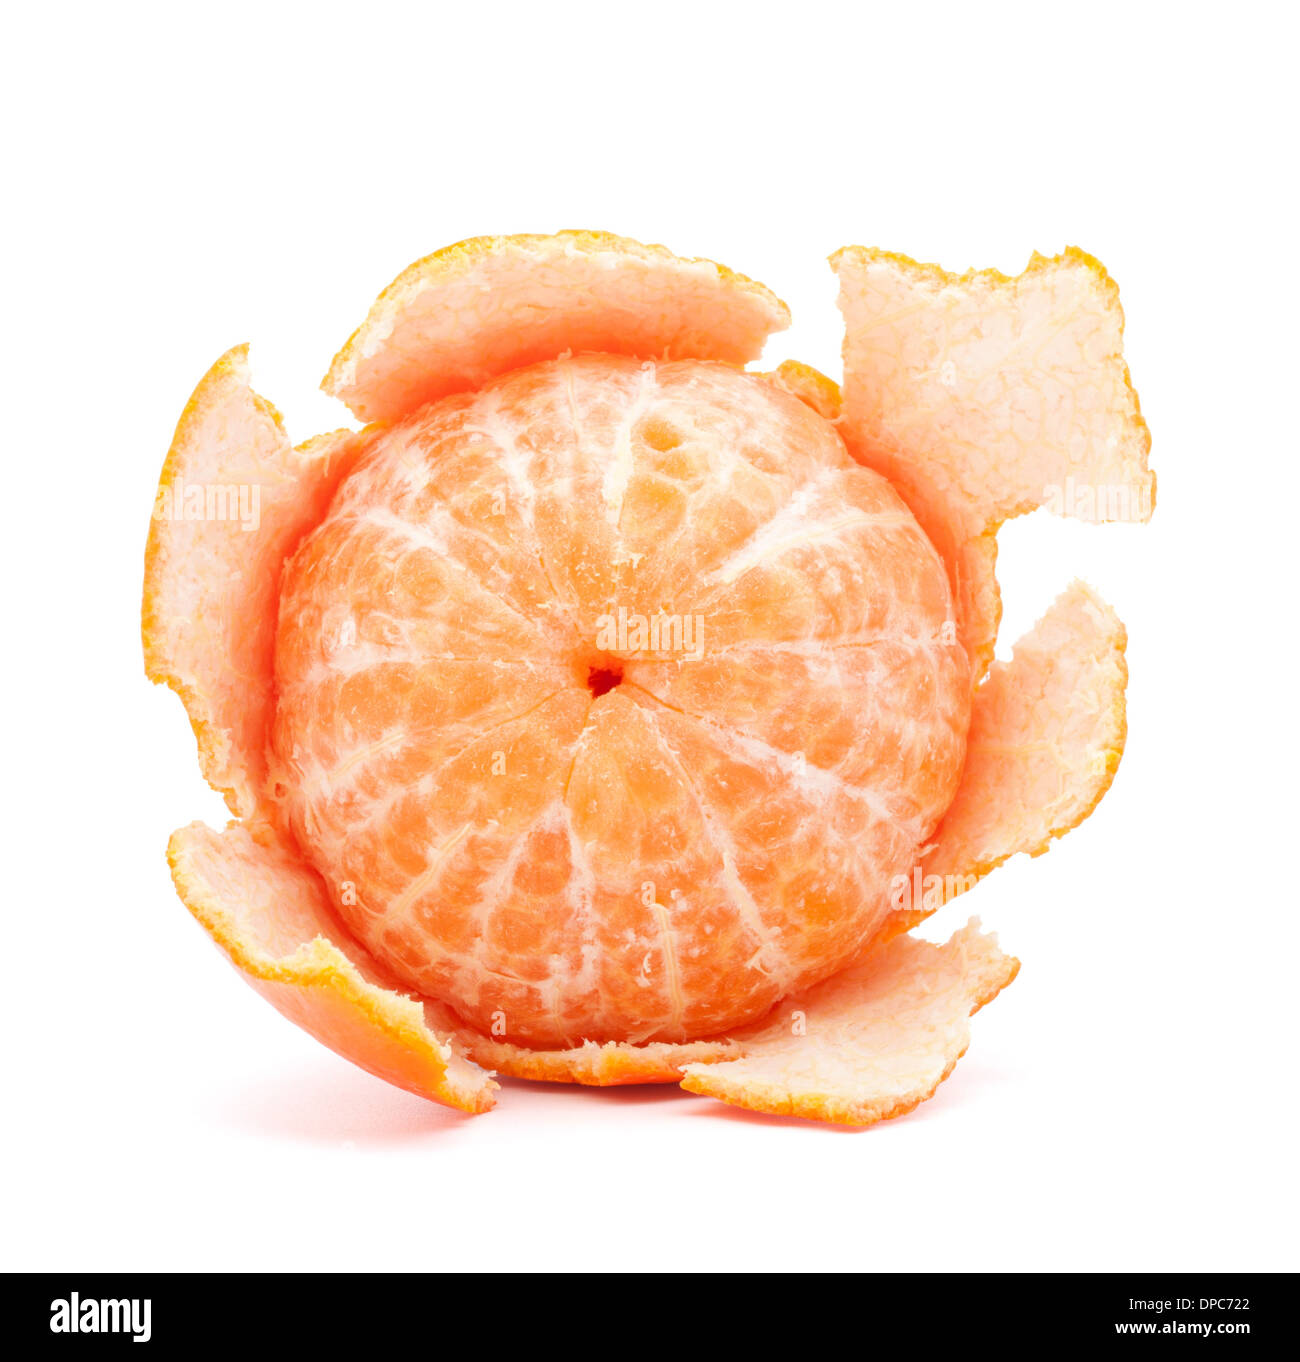 Peeled tangerine or mandarin fruit isolated on white background cutout Stock Photo